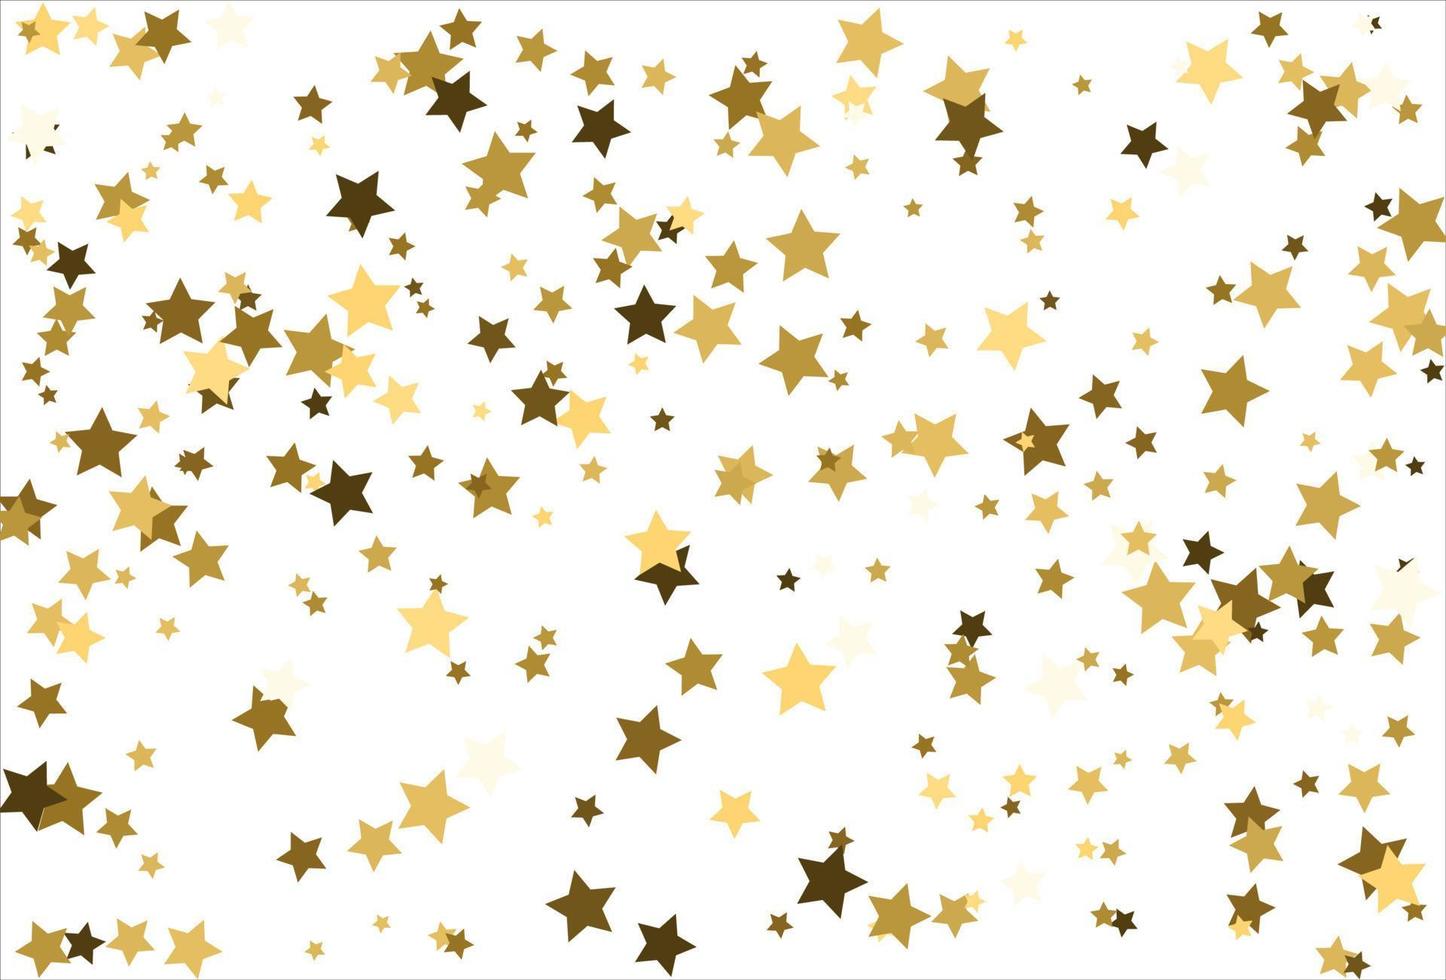 étoiles d'or tombant au hasard sur fond blanc. motif de paillettes pour bannière, carte de voeux, carte de noël et du nouvel an, invitation, carte postale, emballage en papier vecteur